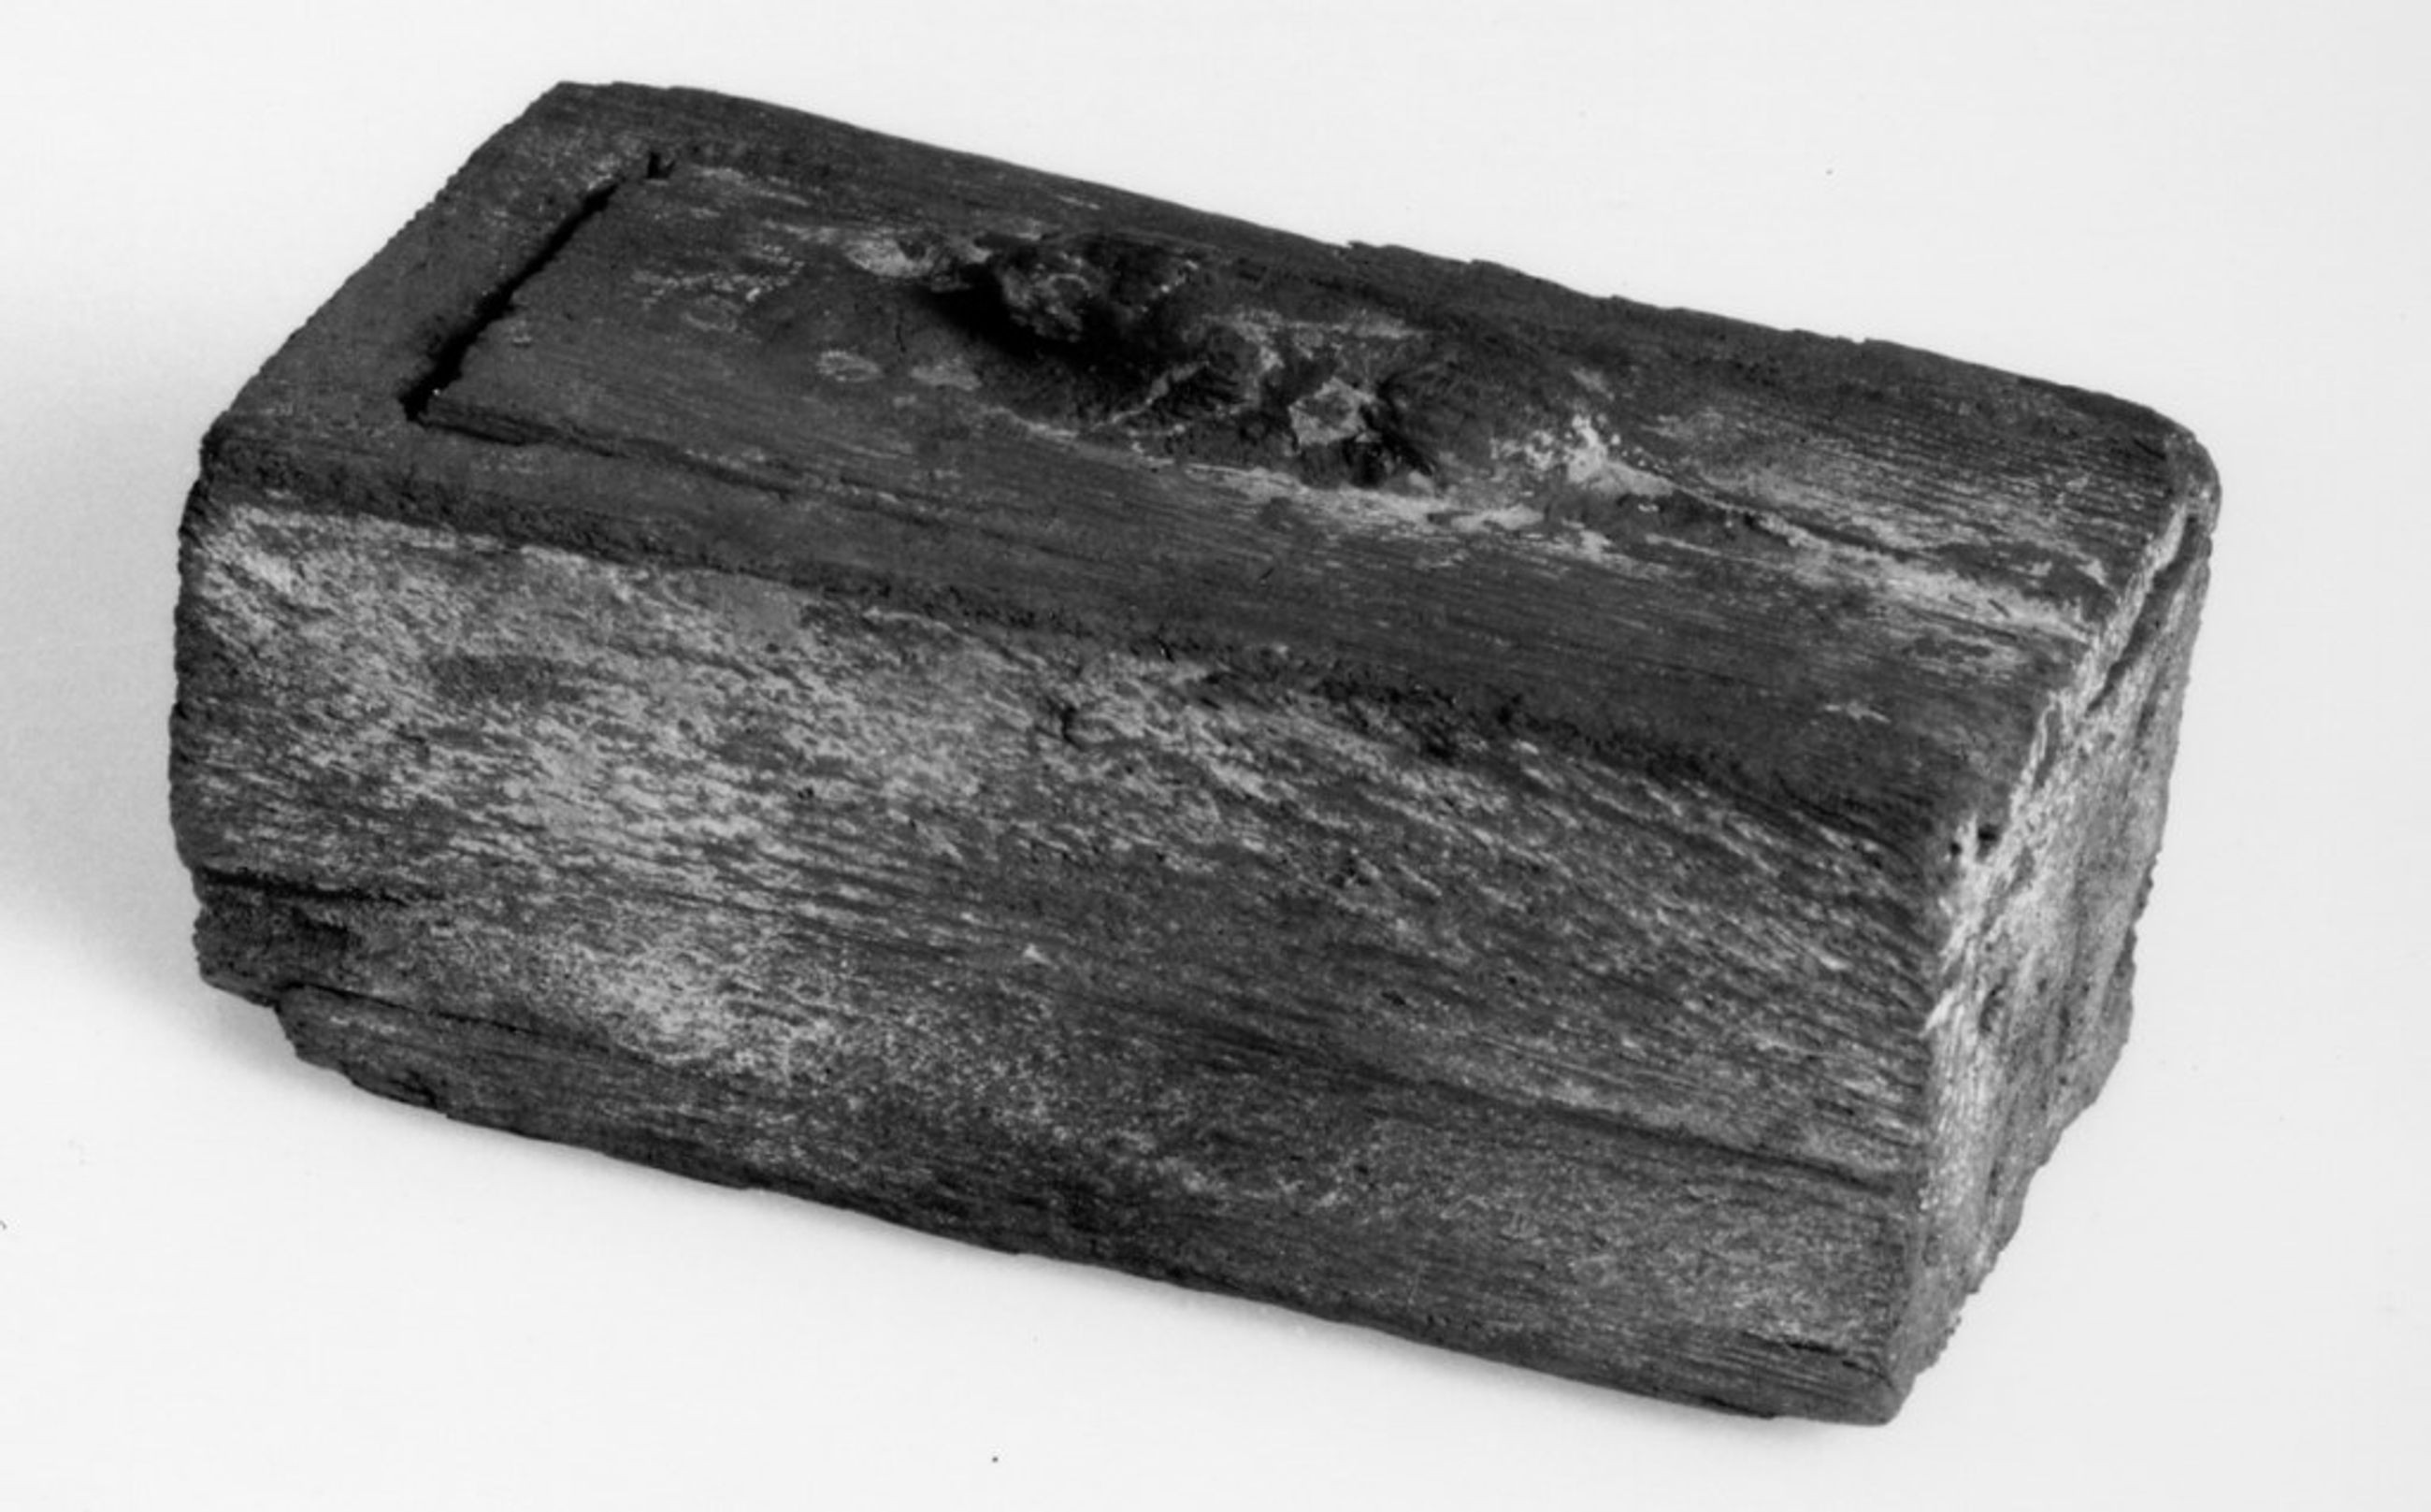 Sarcophage en bois anciennement ploychrome et la figure animale est recouverte a la feuille d or momie animale materiau organique lin 3e periode intermediaire